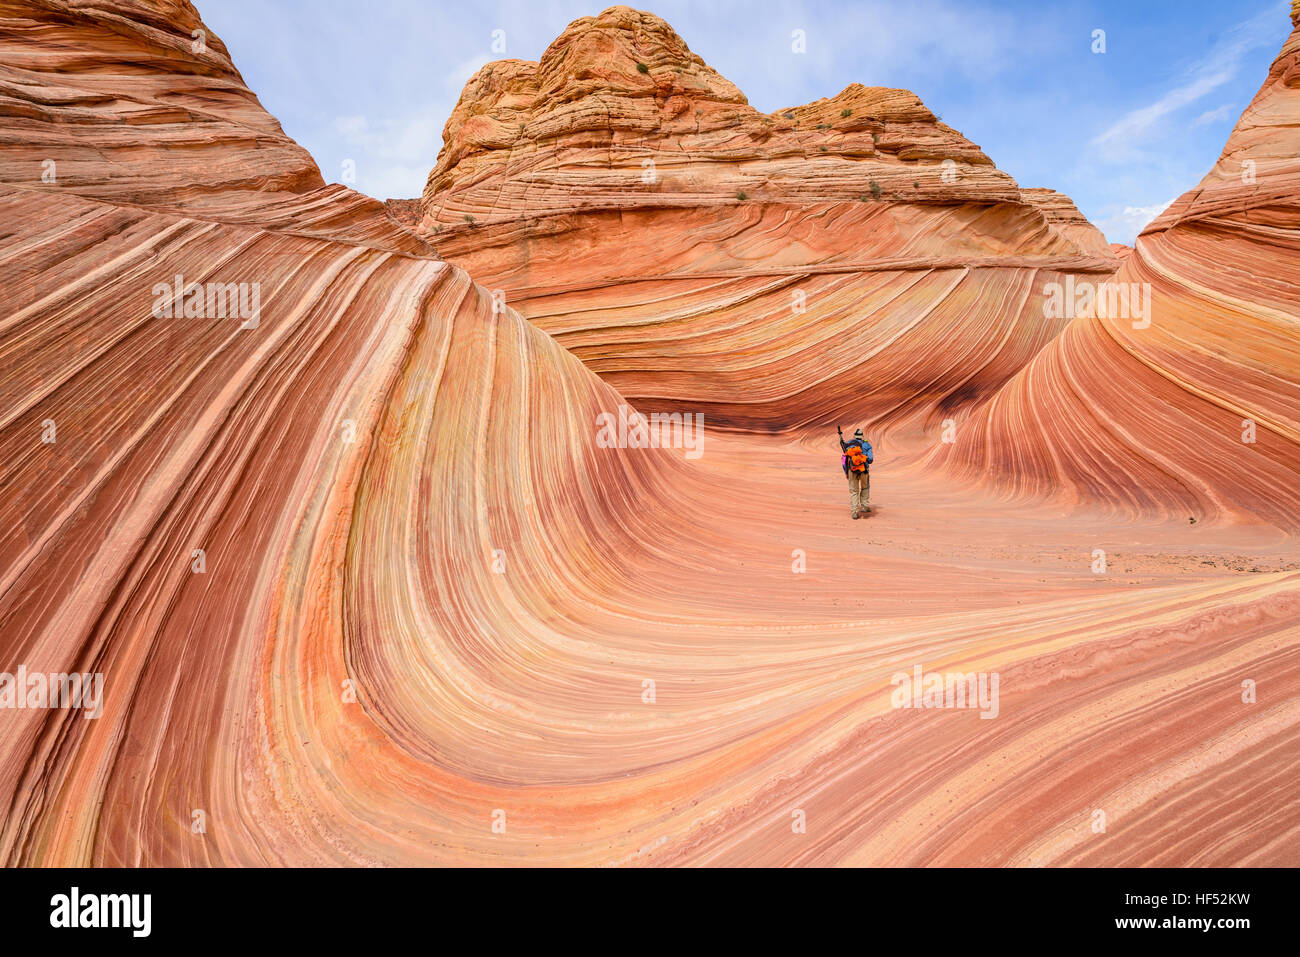 Passeggiate in onda - di un ben attrezzato gli escursionisti a piedi attraverso il centro della forma d'onda su una soleggiata giornata di primavera. Arizona-Utah, STATI UNITI D'AMERICA. Foto Stock